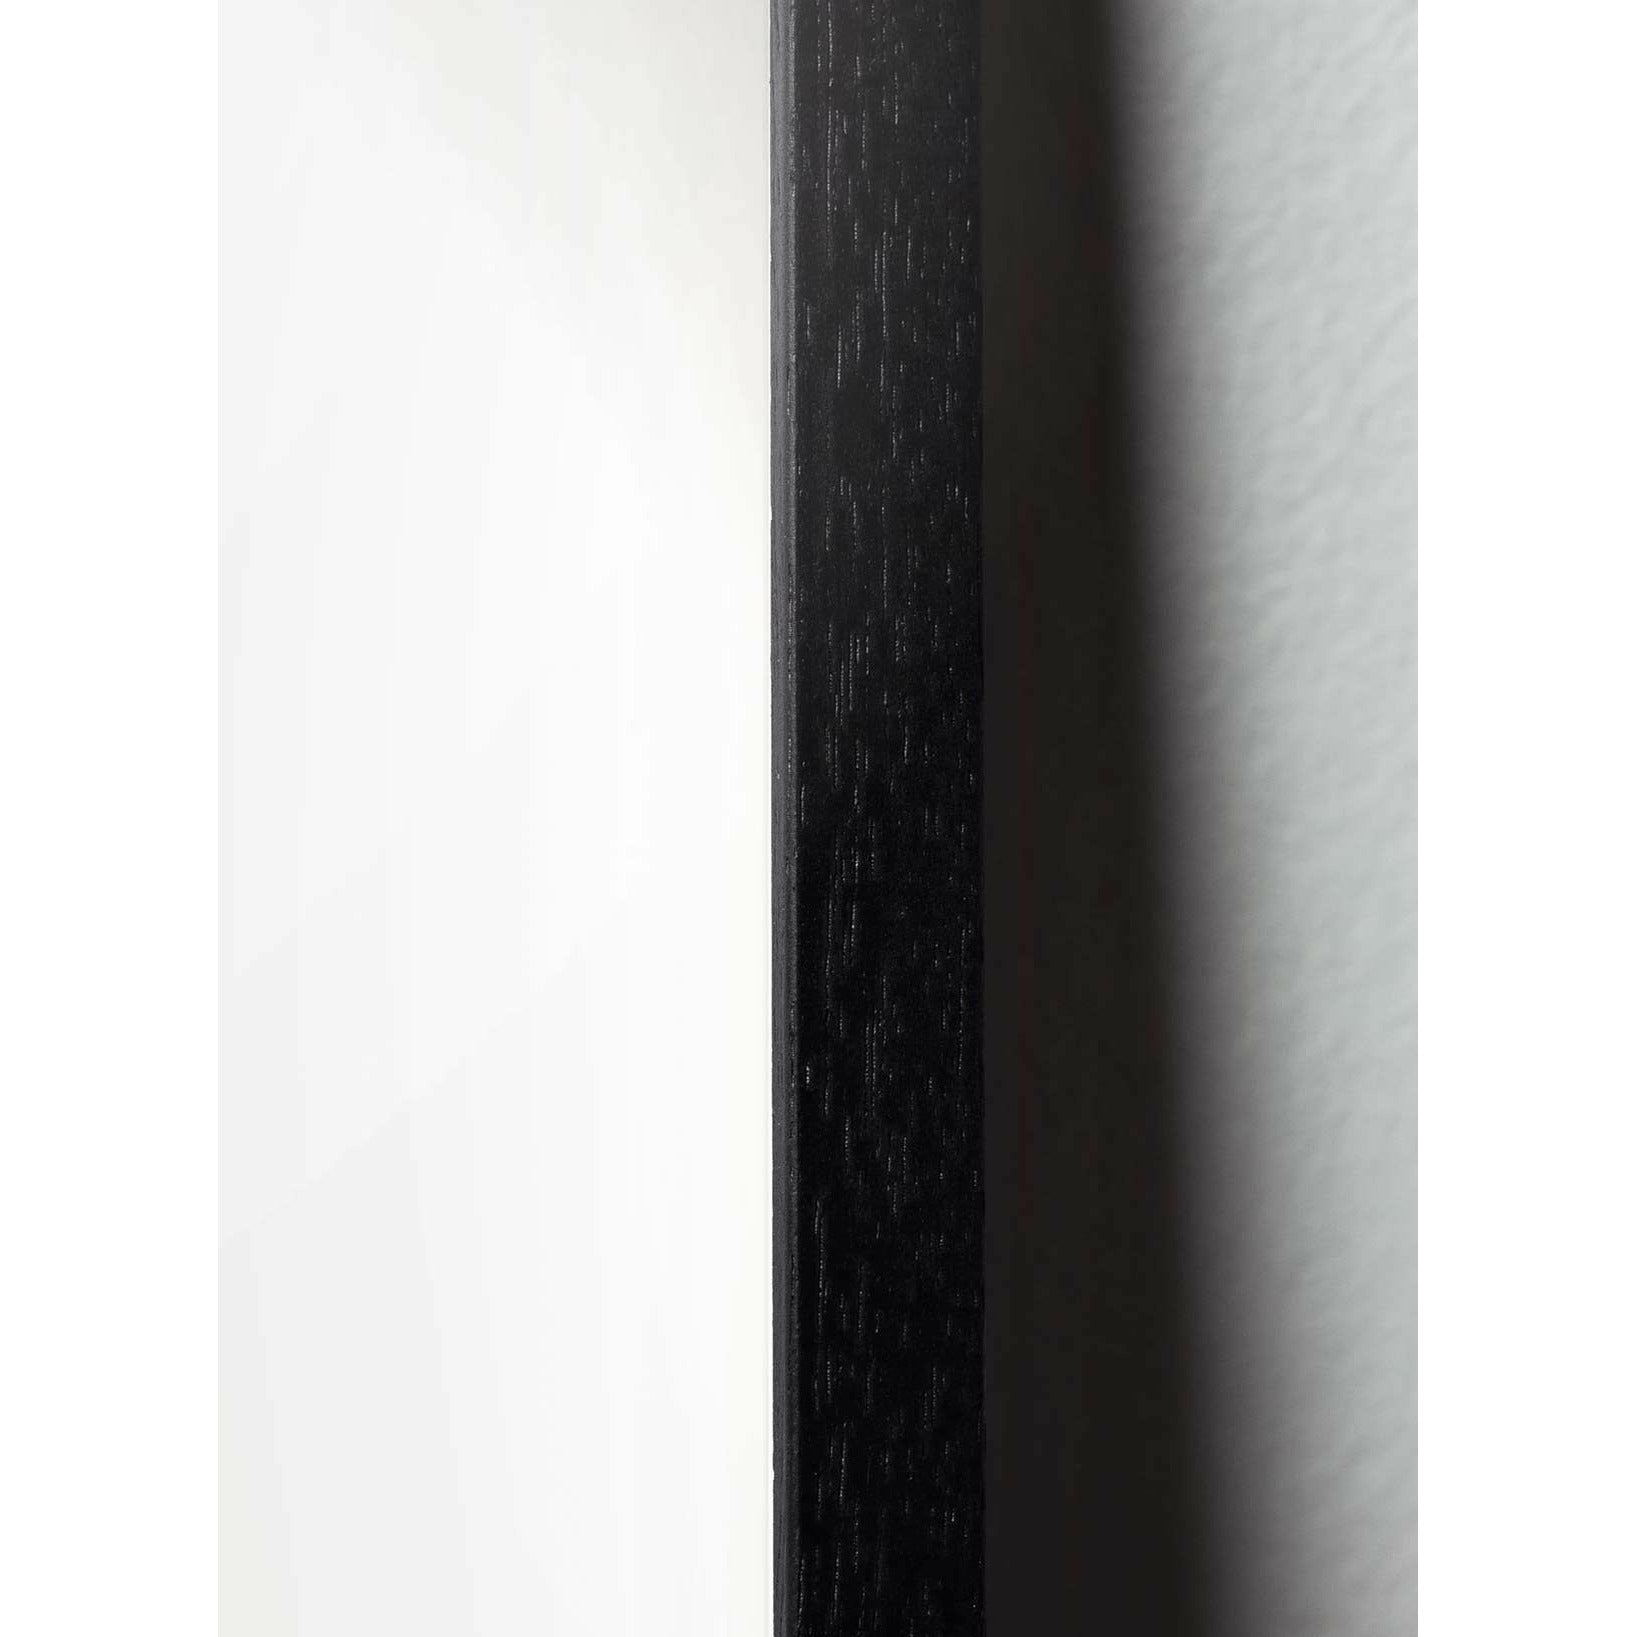 Brainchild Snowdrop Classic Poster, Rahmen aus schwarz lackiertem Holz 30x40 cm, dunkelblauer Hintergrund